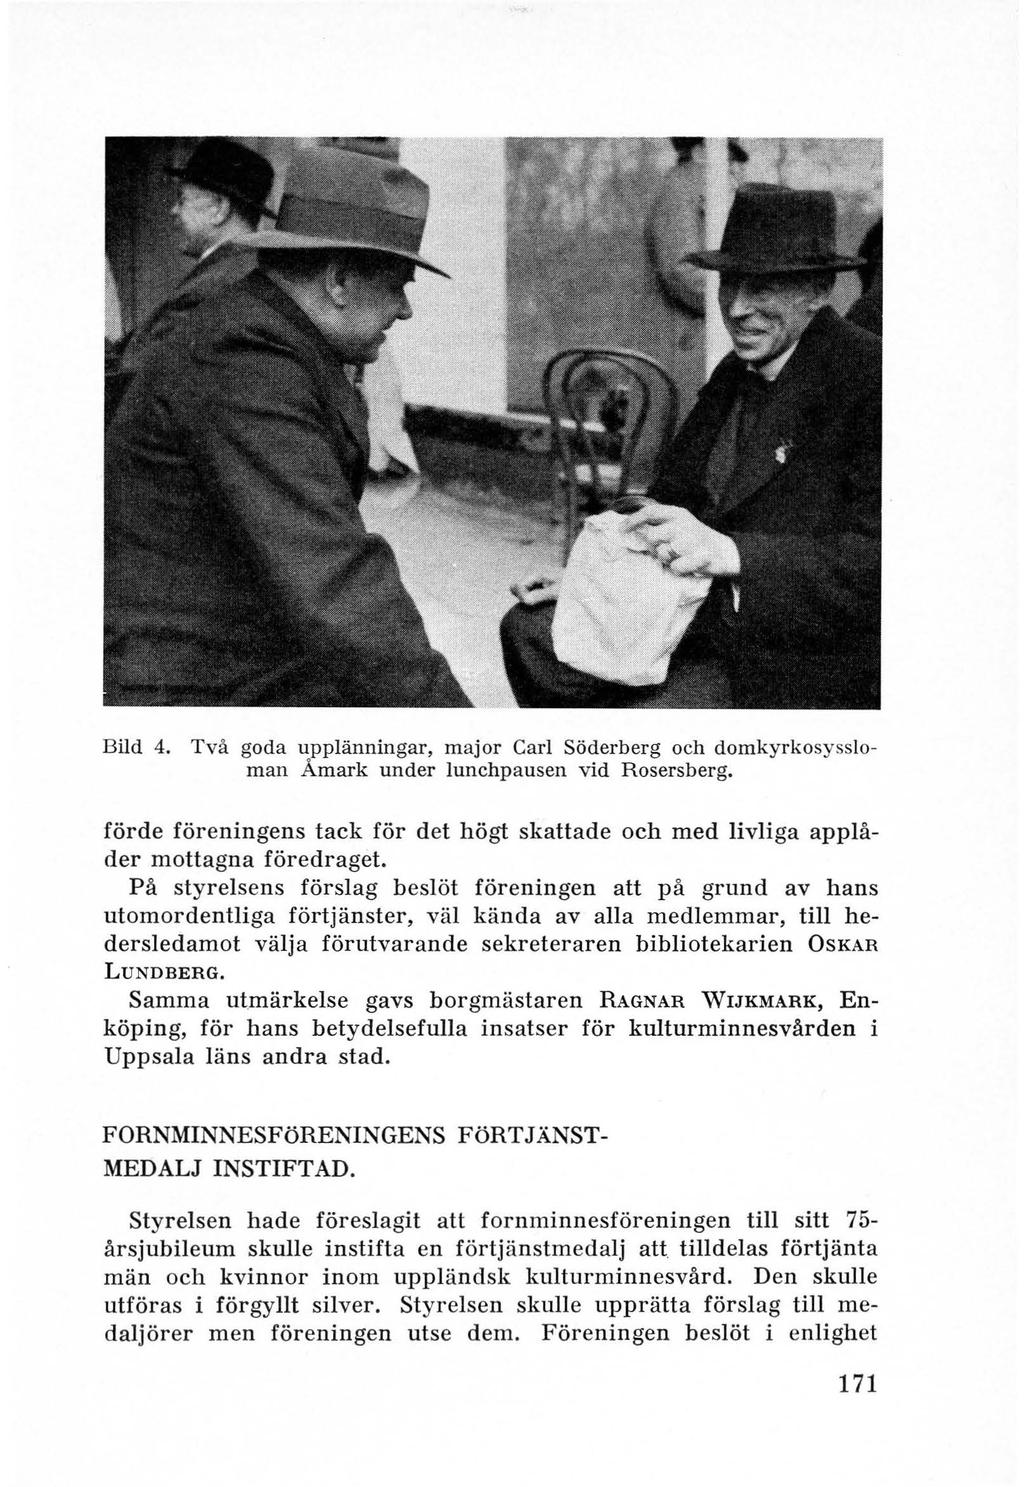 Bild 4. Två goda upplänningar, major Carl Söderberg och domkyrkosyssloman Åmark under lunchpausen vid Rosersberg.